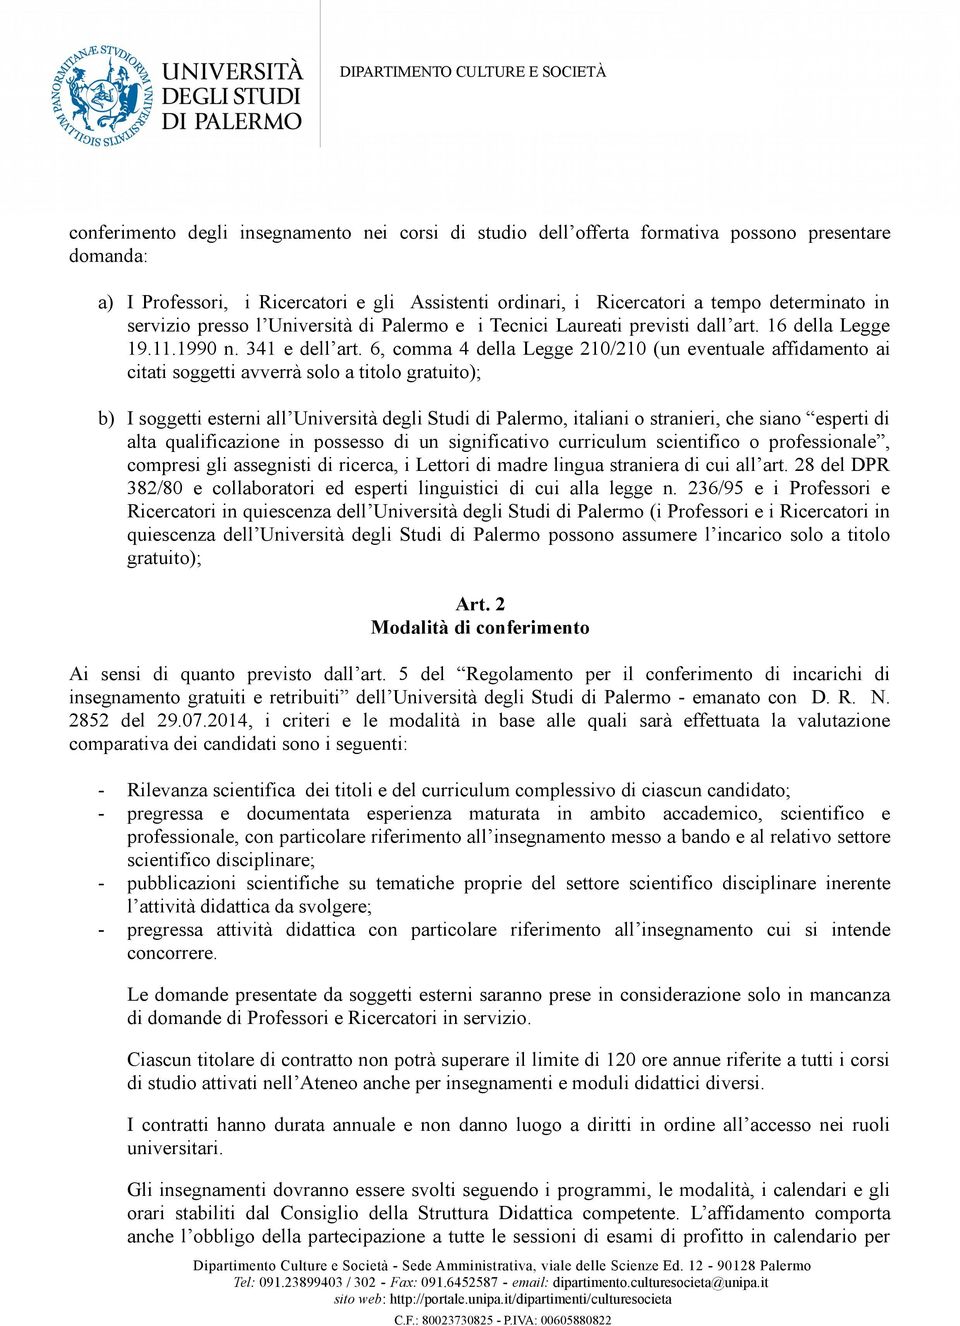 6, comma 4 della Legge 210/210 (un eventuale affidamento ai citati soggetti avverrà solo a titolo gratuito); b) I soggetti esterni all Università degli Studi di Palermo, italiani o stranieri, che